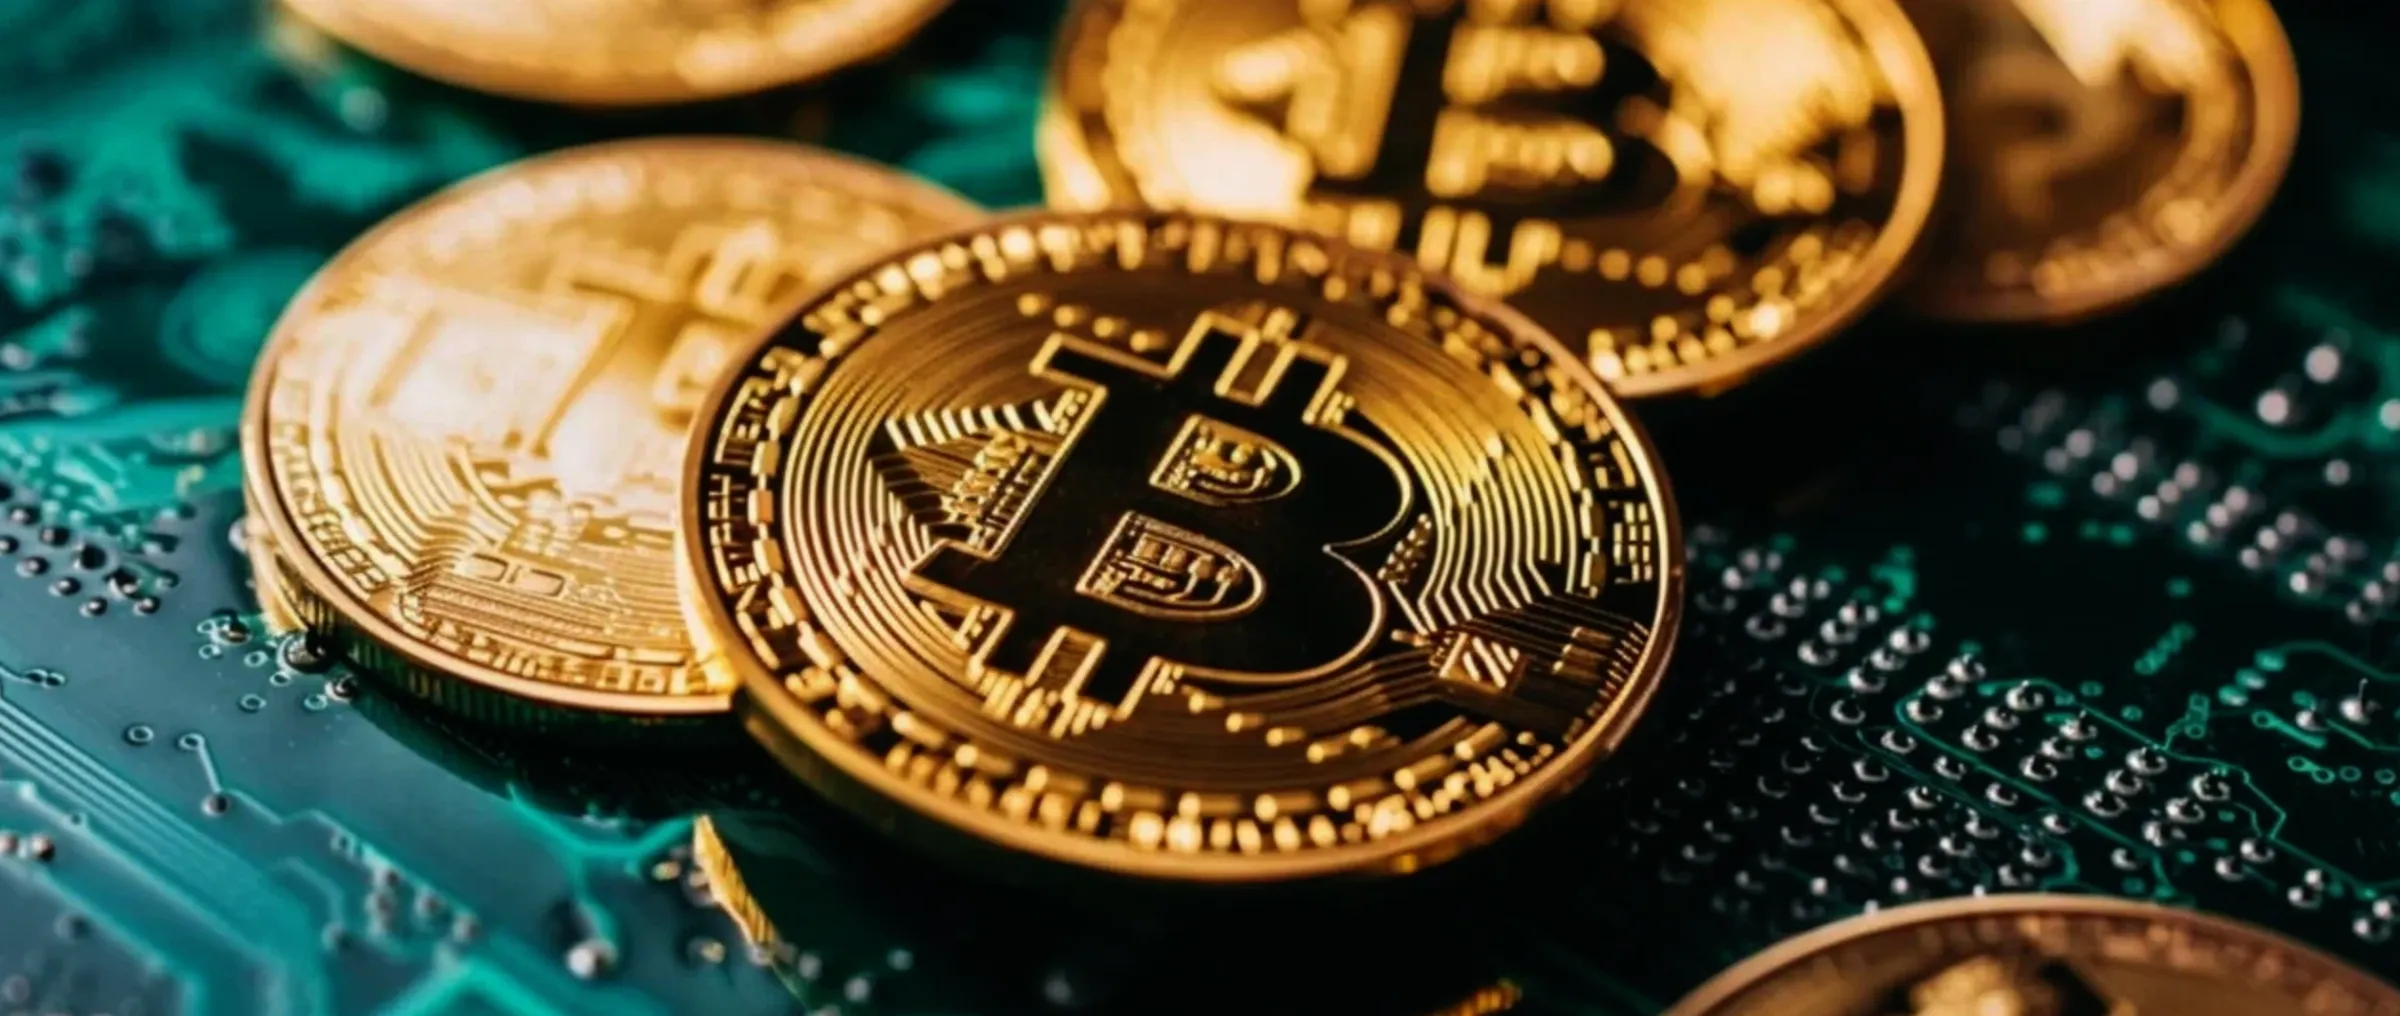 Количество обладателей Bitcoin достигло исторически высоких значений